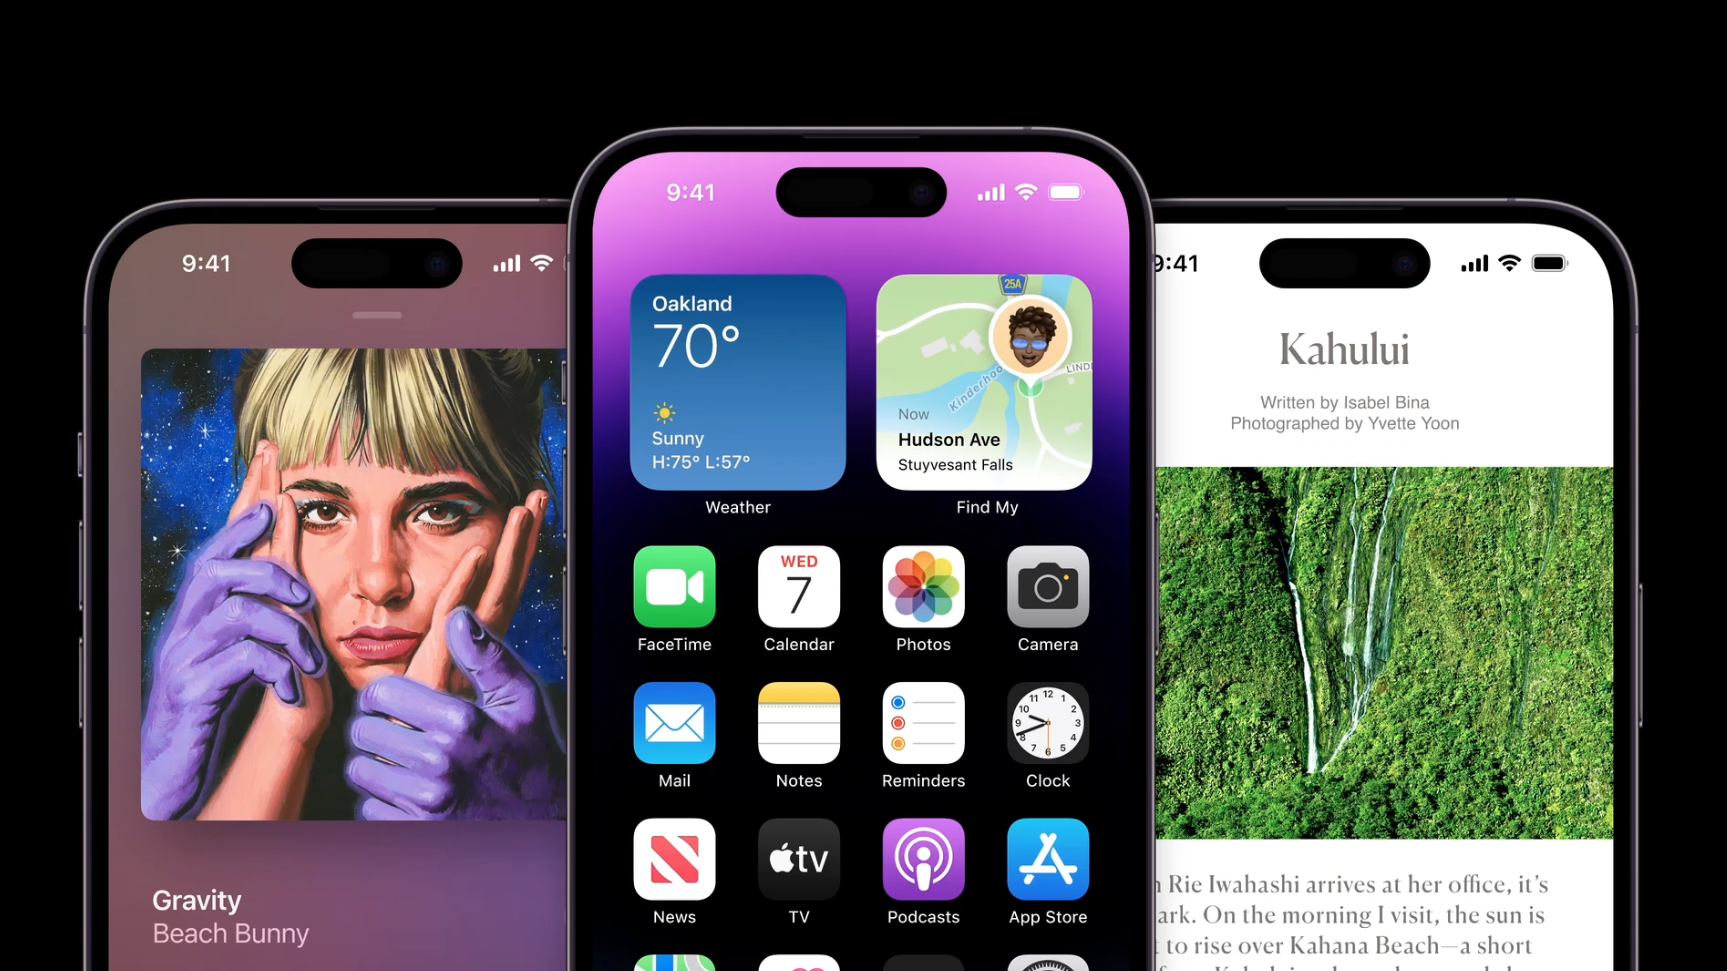 Apple chính thức ra mắt iPhone 14 series: Không có phiên bản Mini, giá từ 22.99 triệu đồng tại Di Động Việt